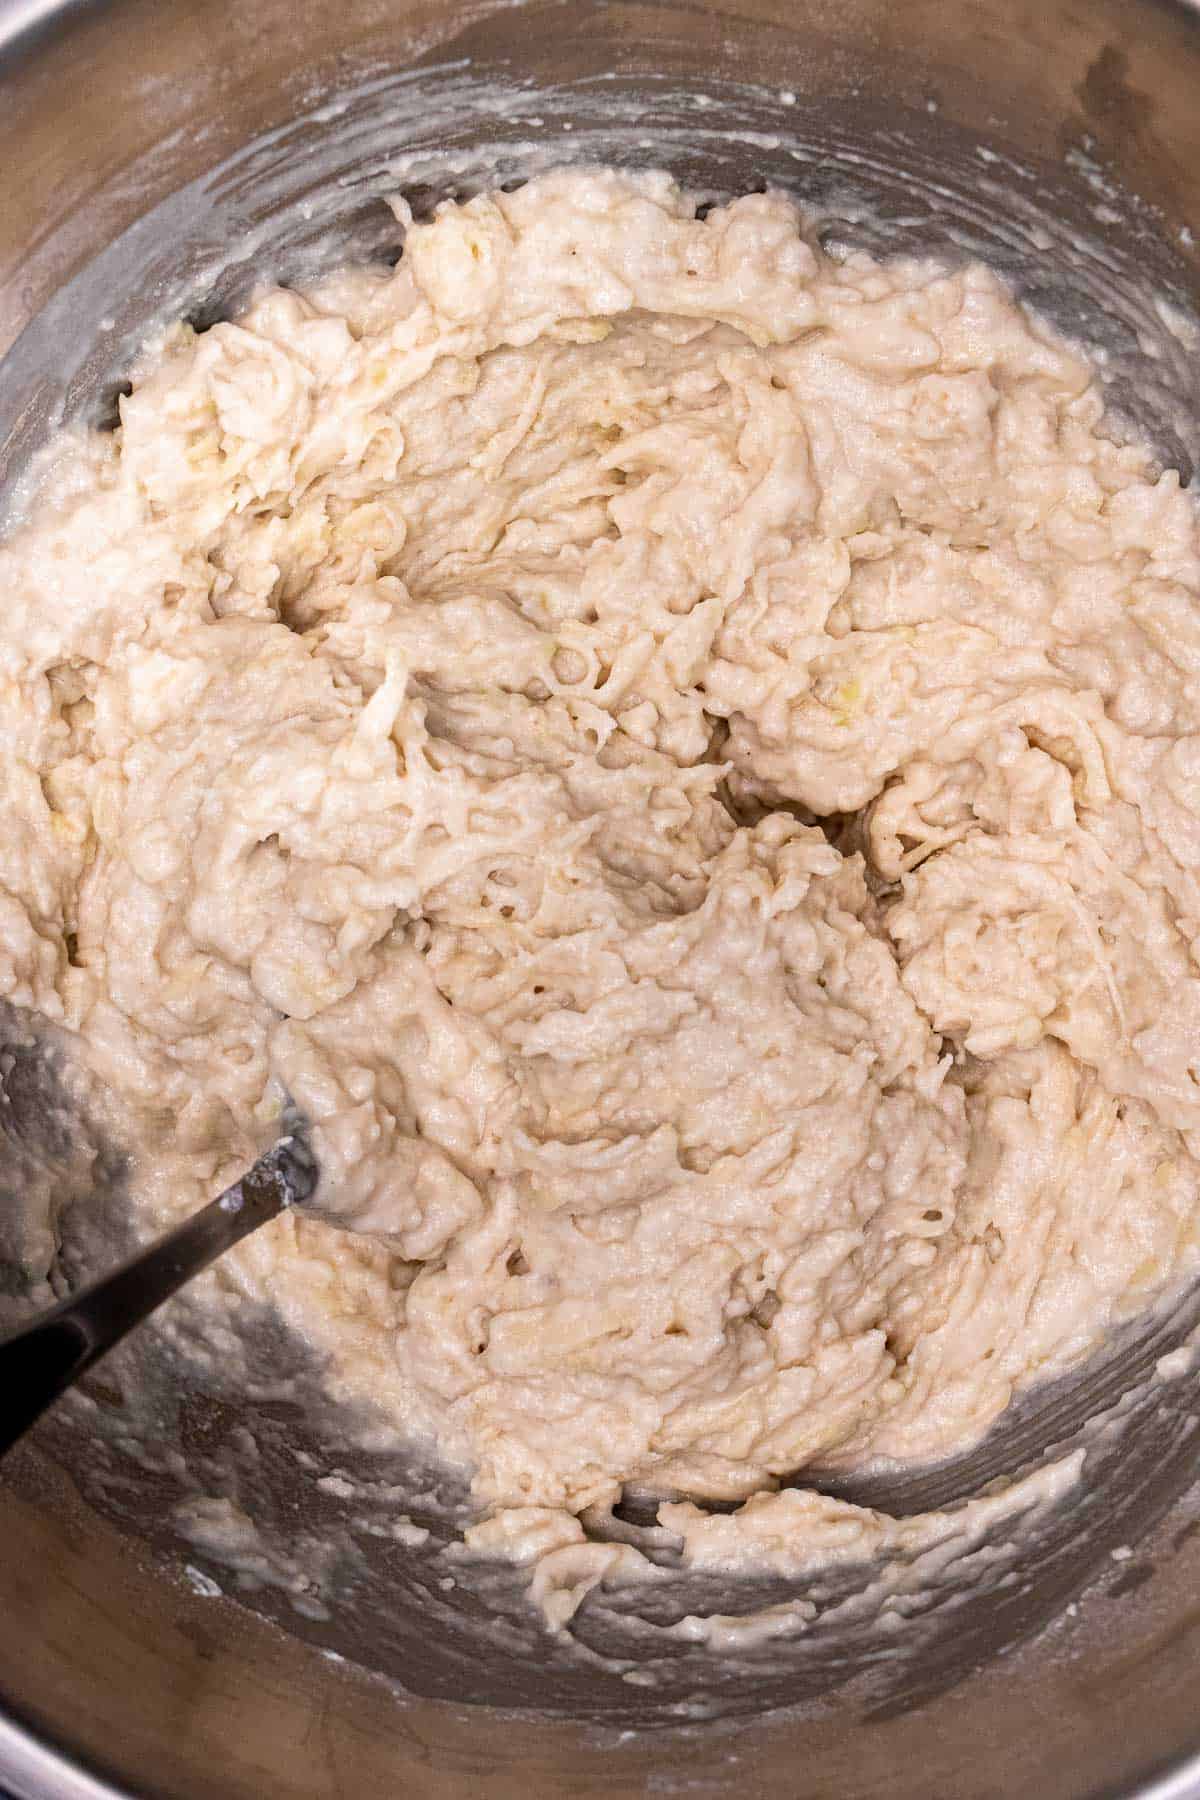 Adding buttermilk to the mashed potato mixture for making Irish potato pancakes.